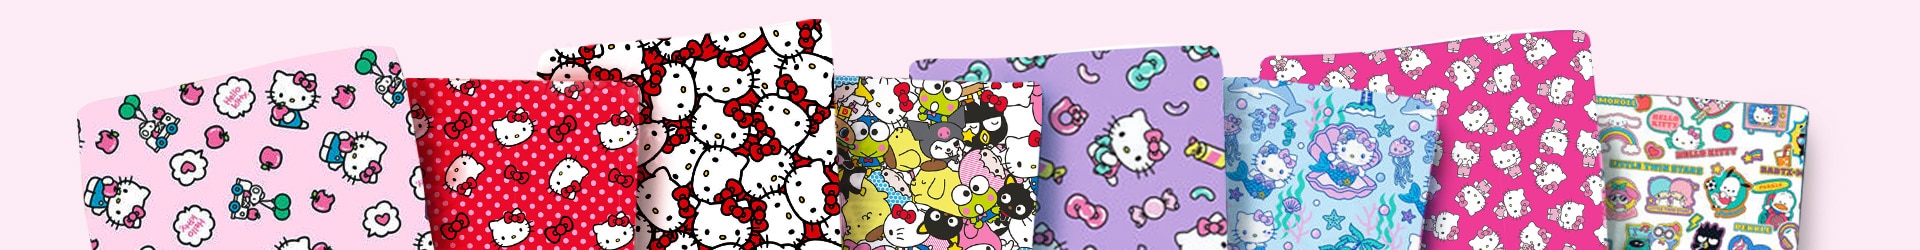 Hello Kitty Fabric at JOANN